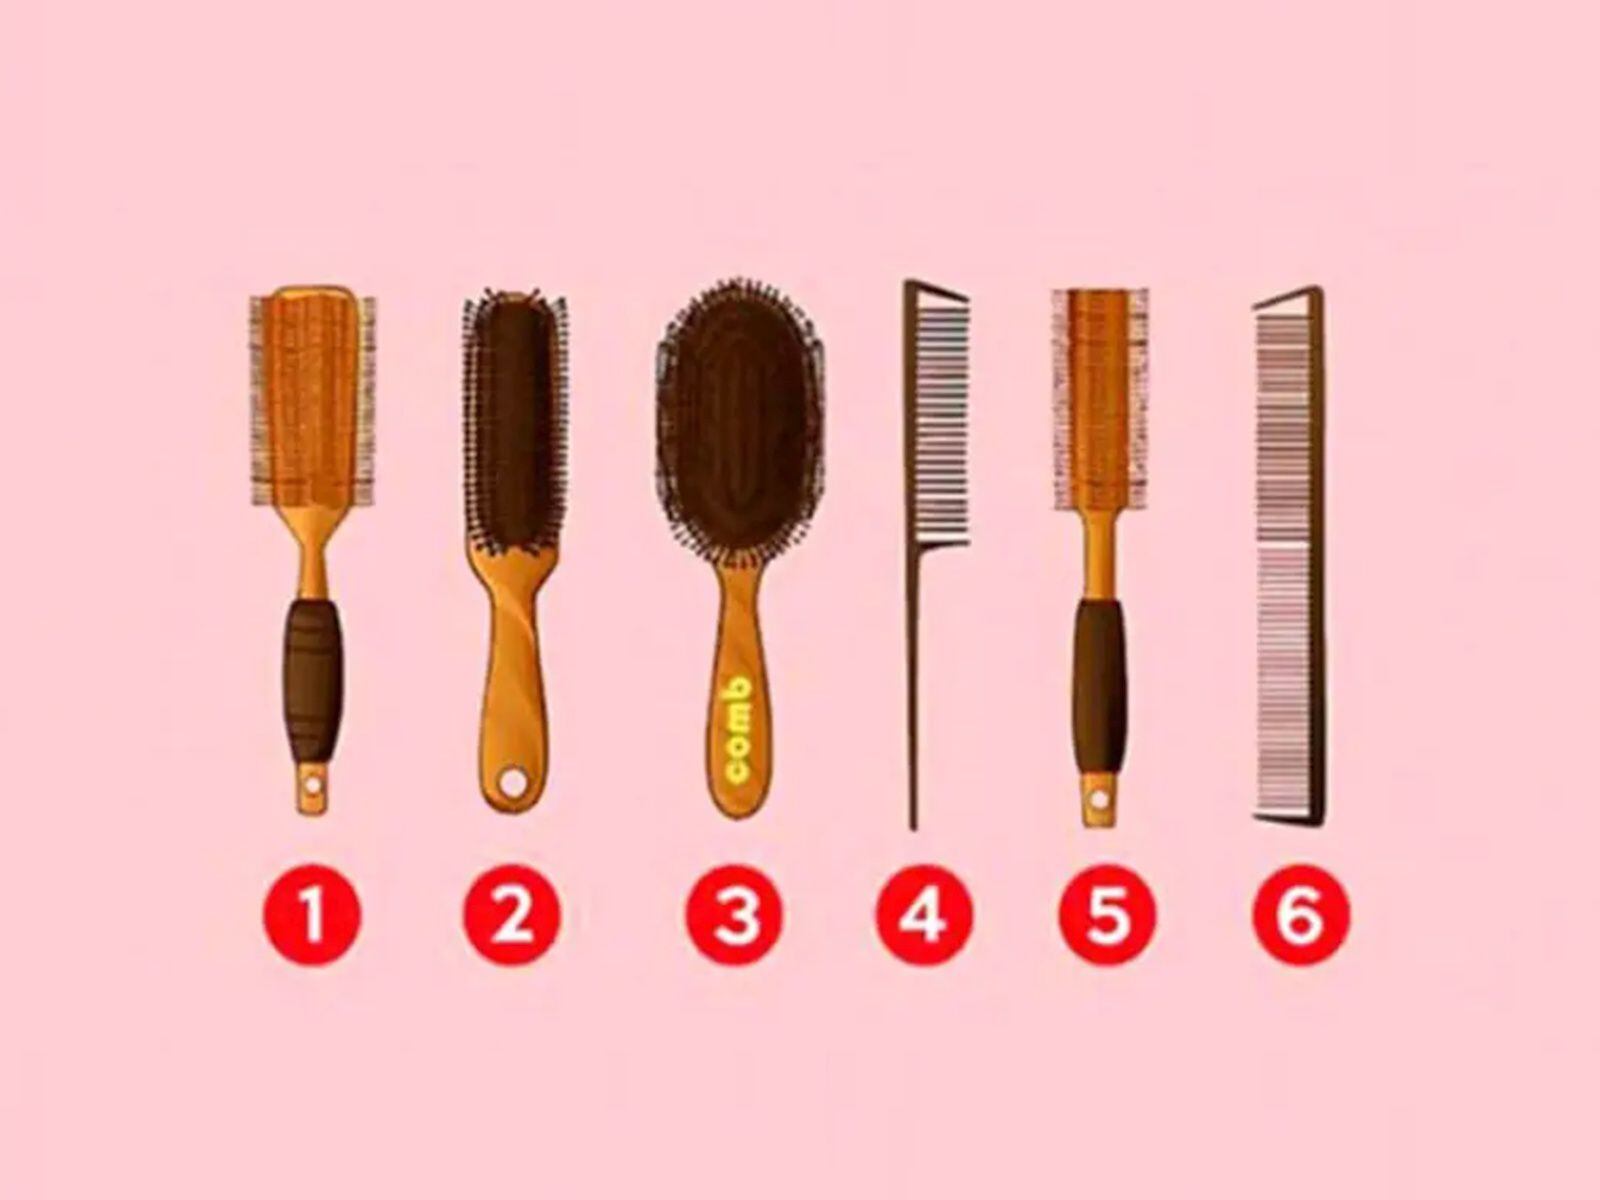 TEST VISUAL | Esta imagen te muestra cepillos y peines. ¿Cuál usas para arreglarte el cabello? (Foto: namastest.net)